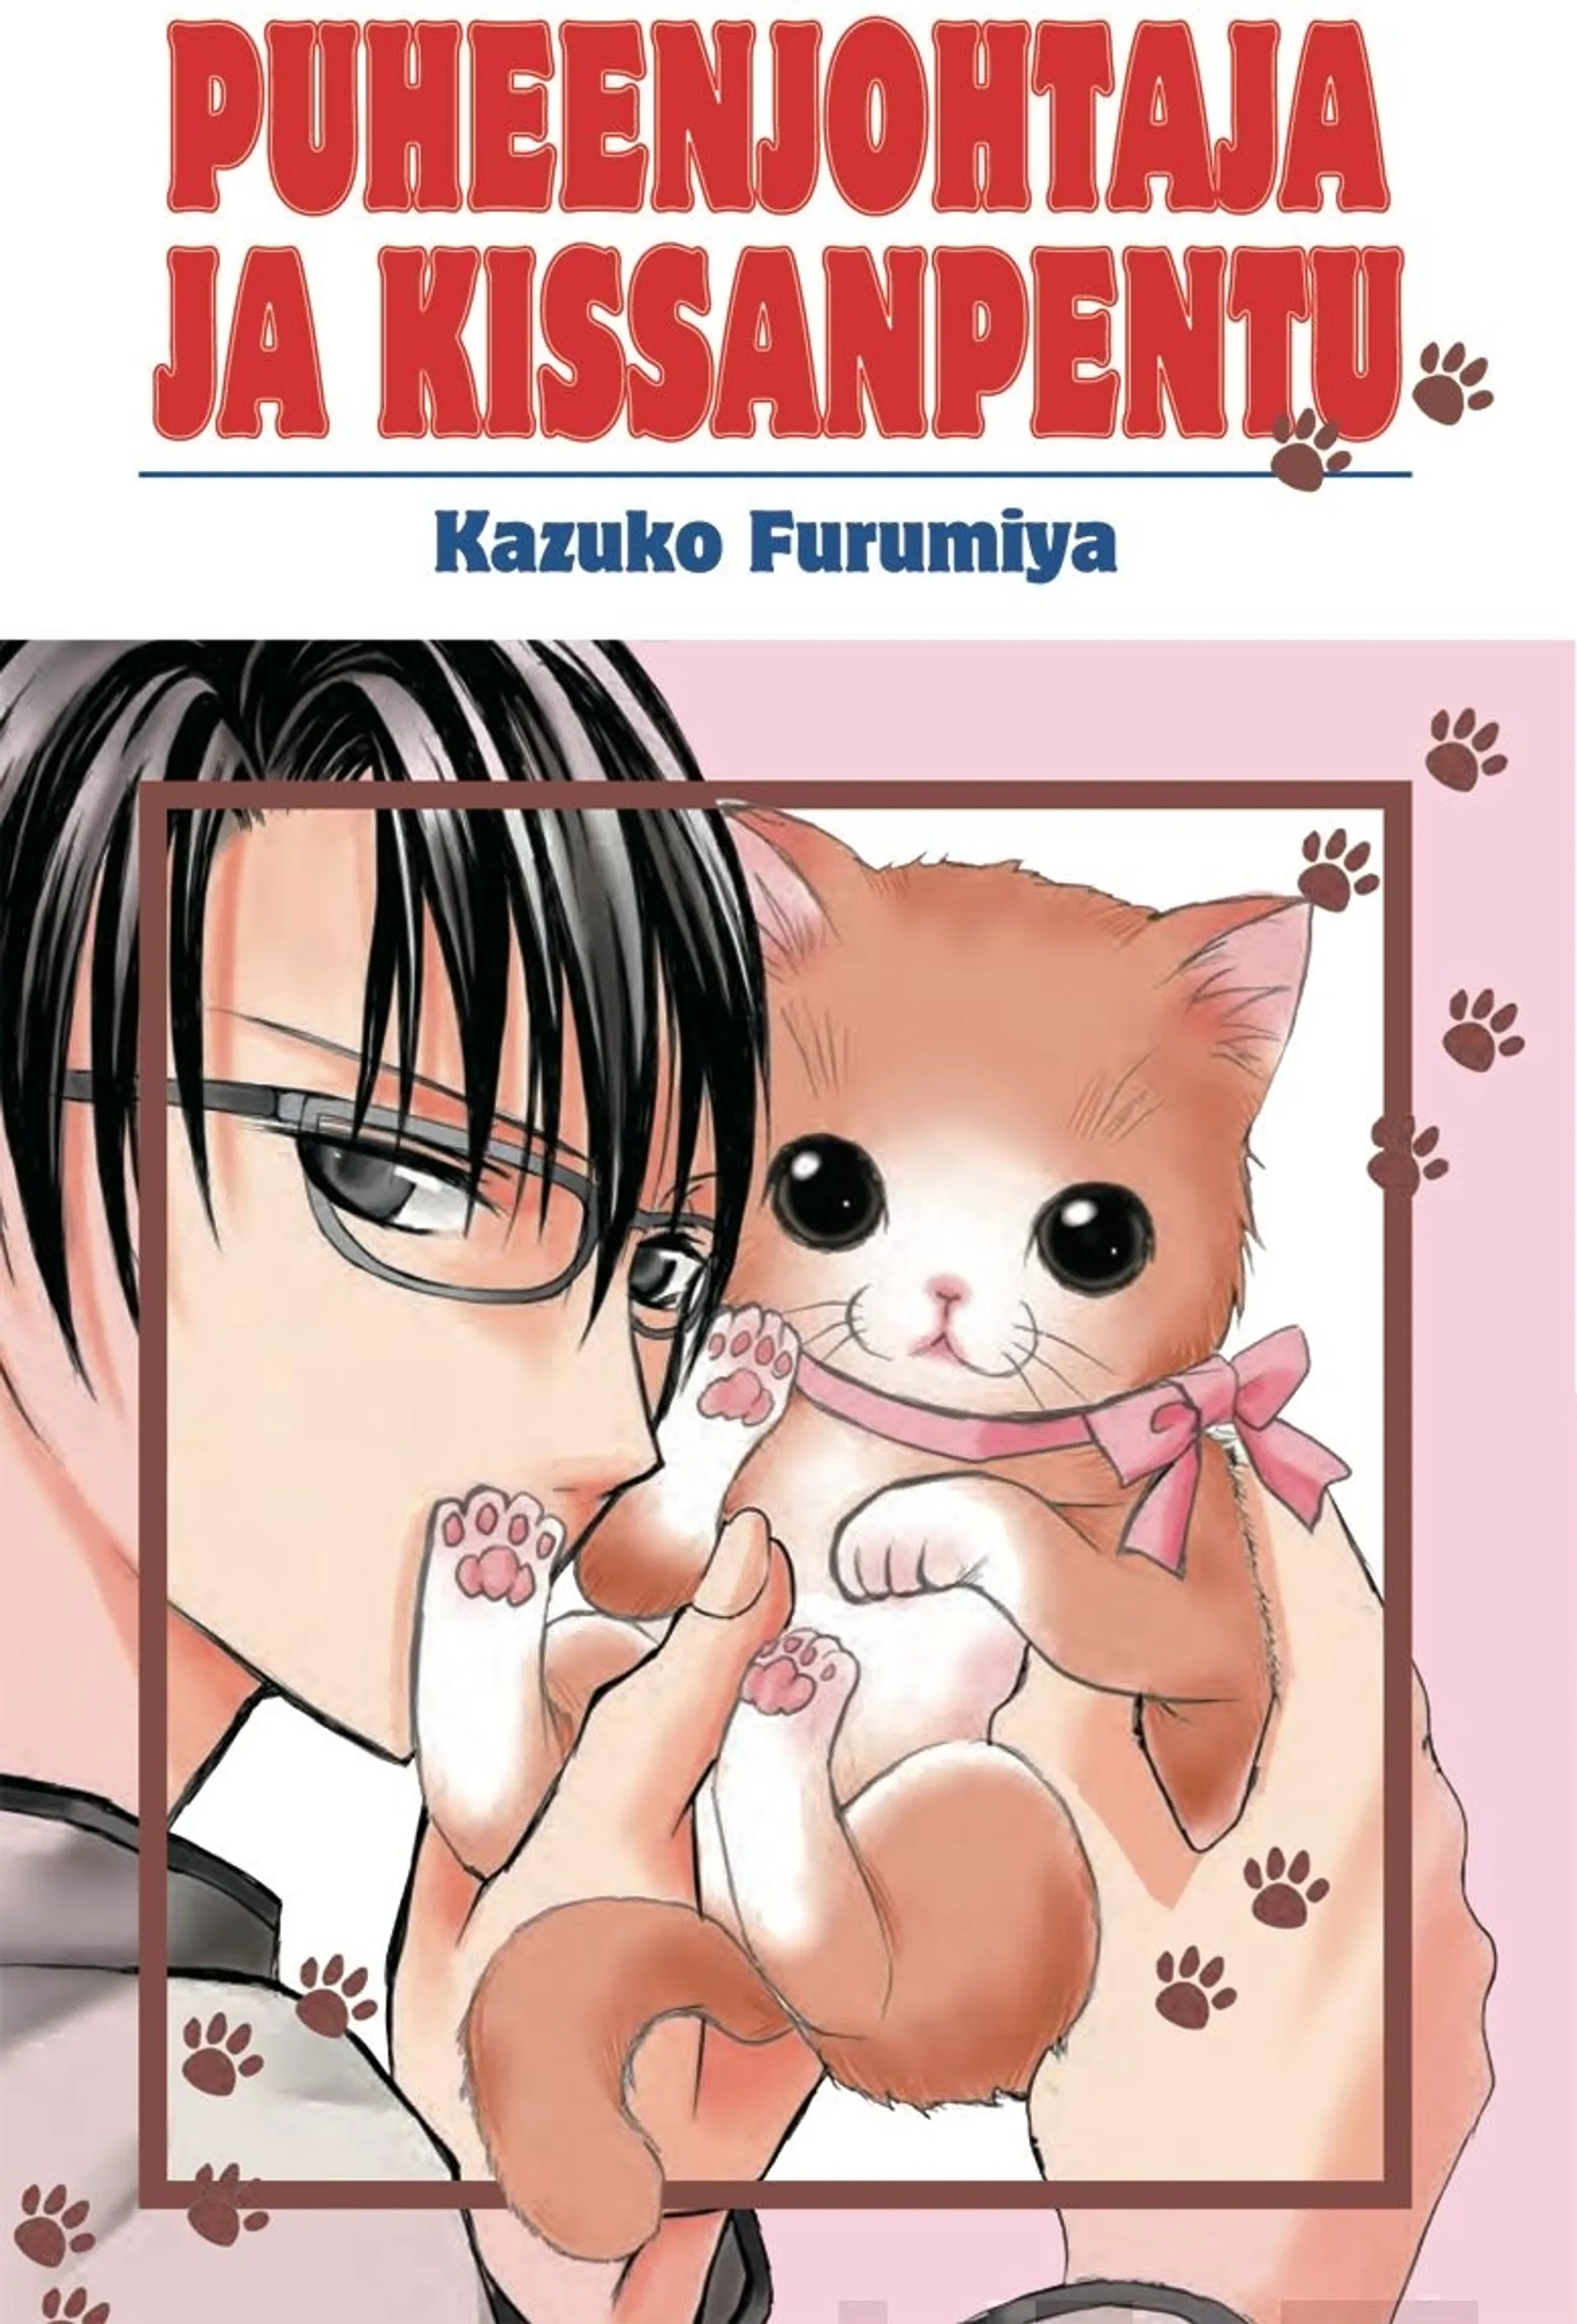 Furumiya, Puheenjohtaja ja kissanpentu